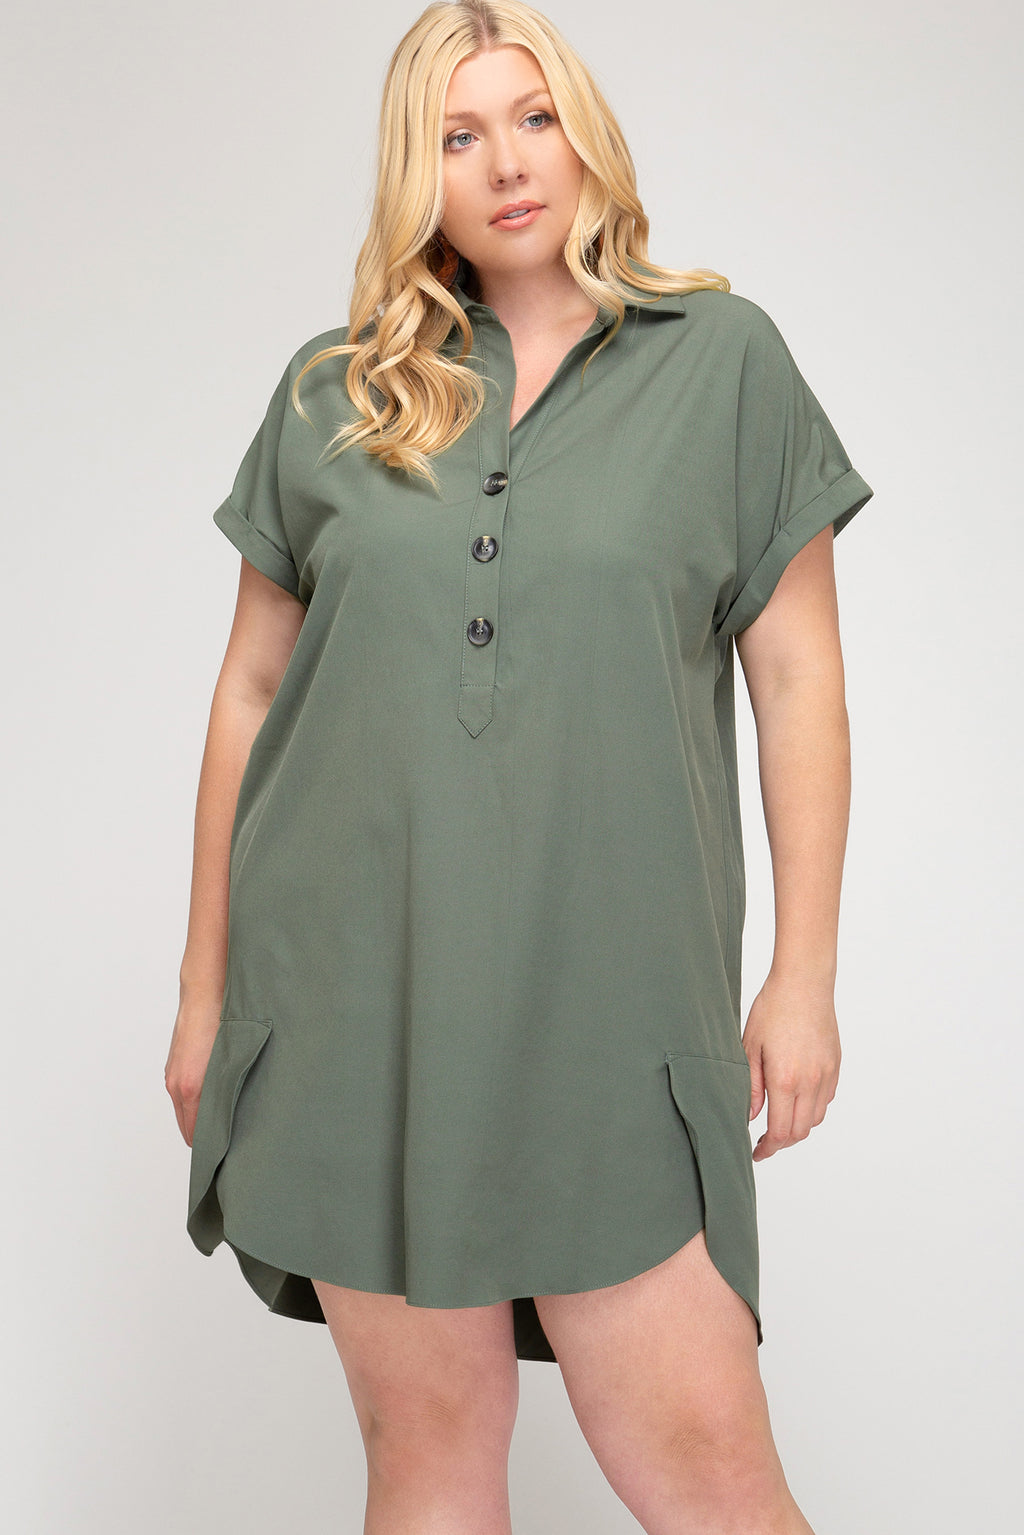 Olive Tunic Plus Size Dress – Elizabeth's Boutique